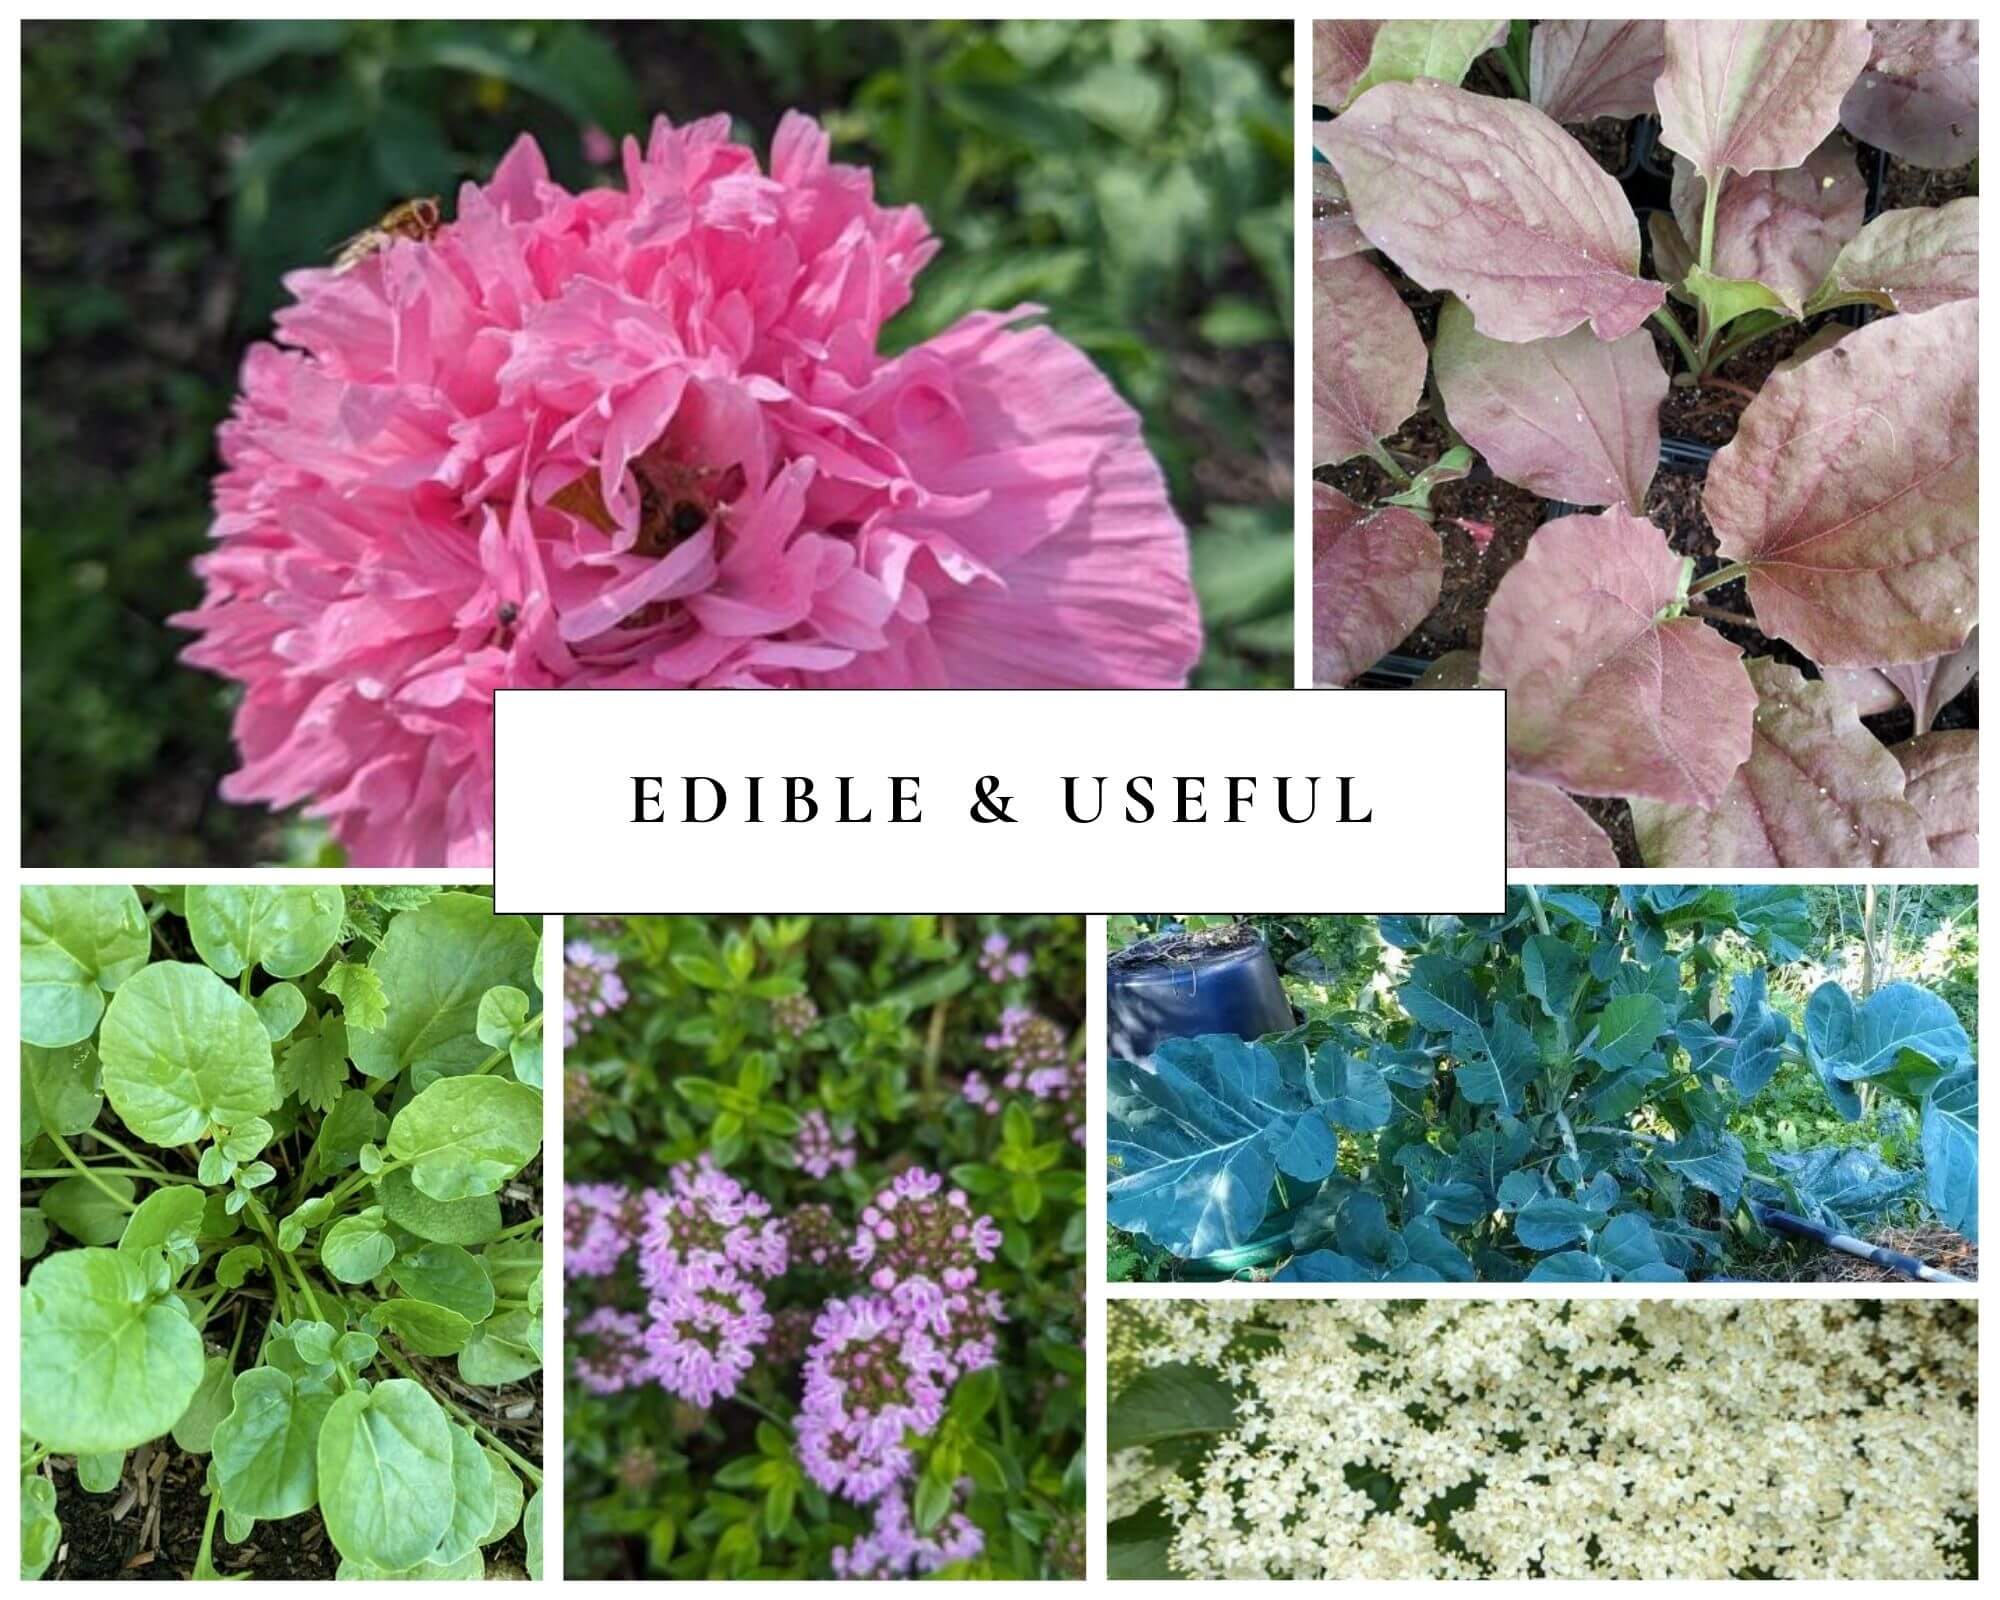 edible and useful plants earthed up